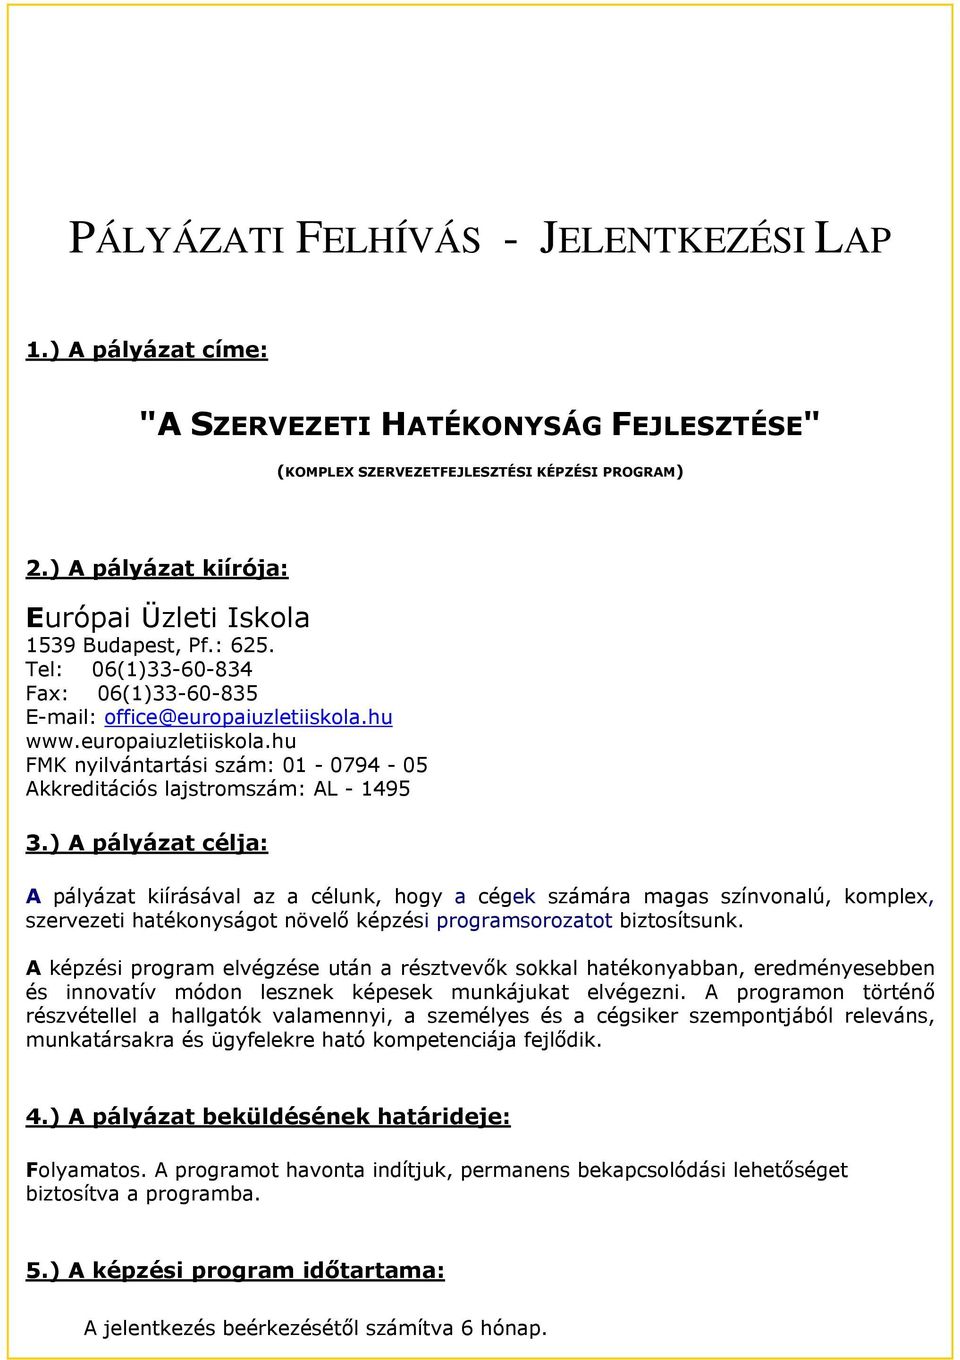 hu www.europaiuzletiiskola.hu FMK nyilvántartási szám: 01-0794 - 05 Akkreditációs lajstromszám: AL - 1495 3.